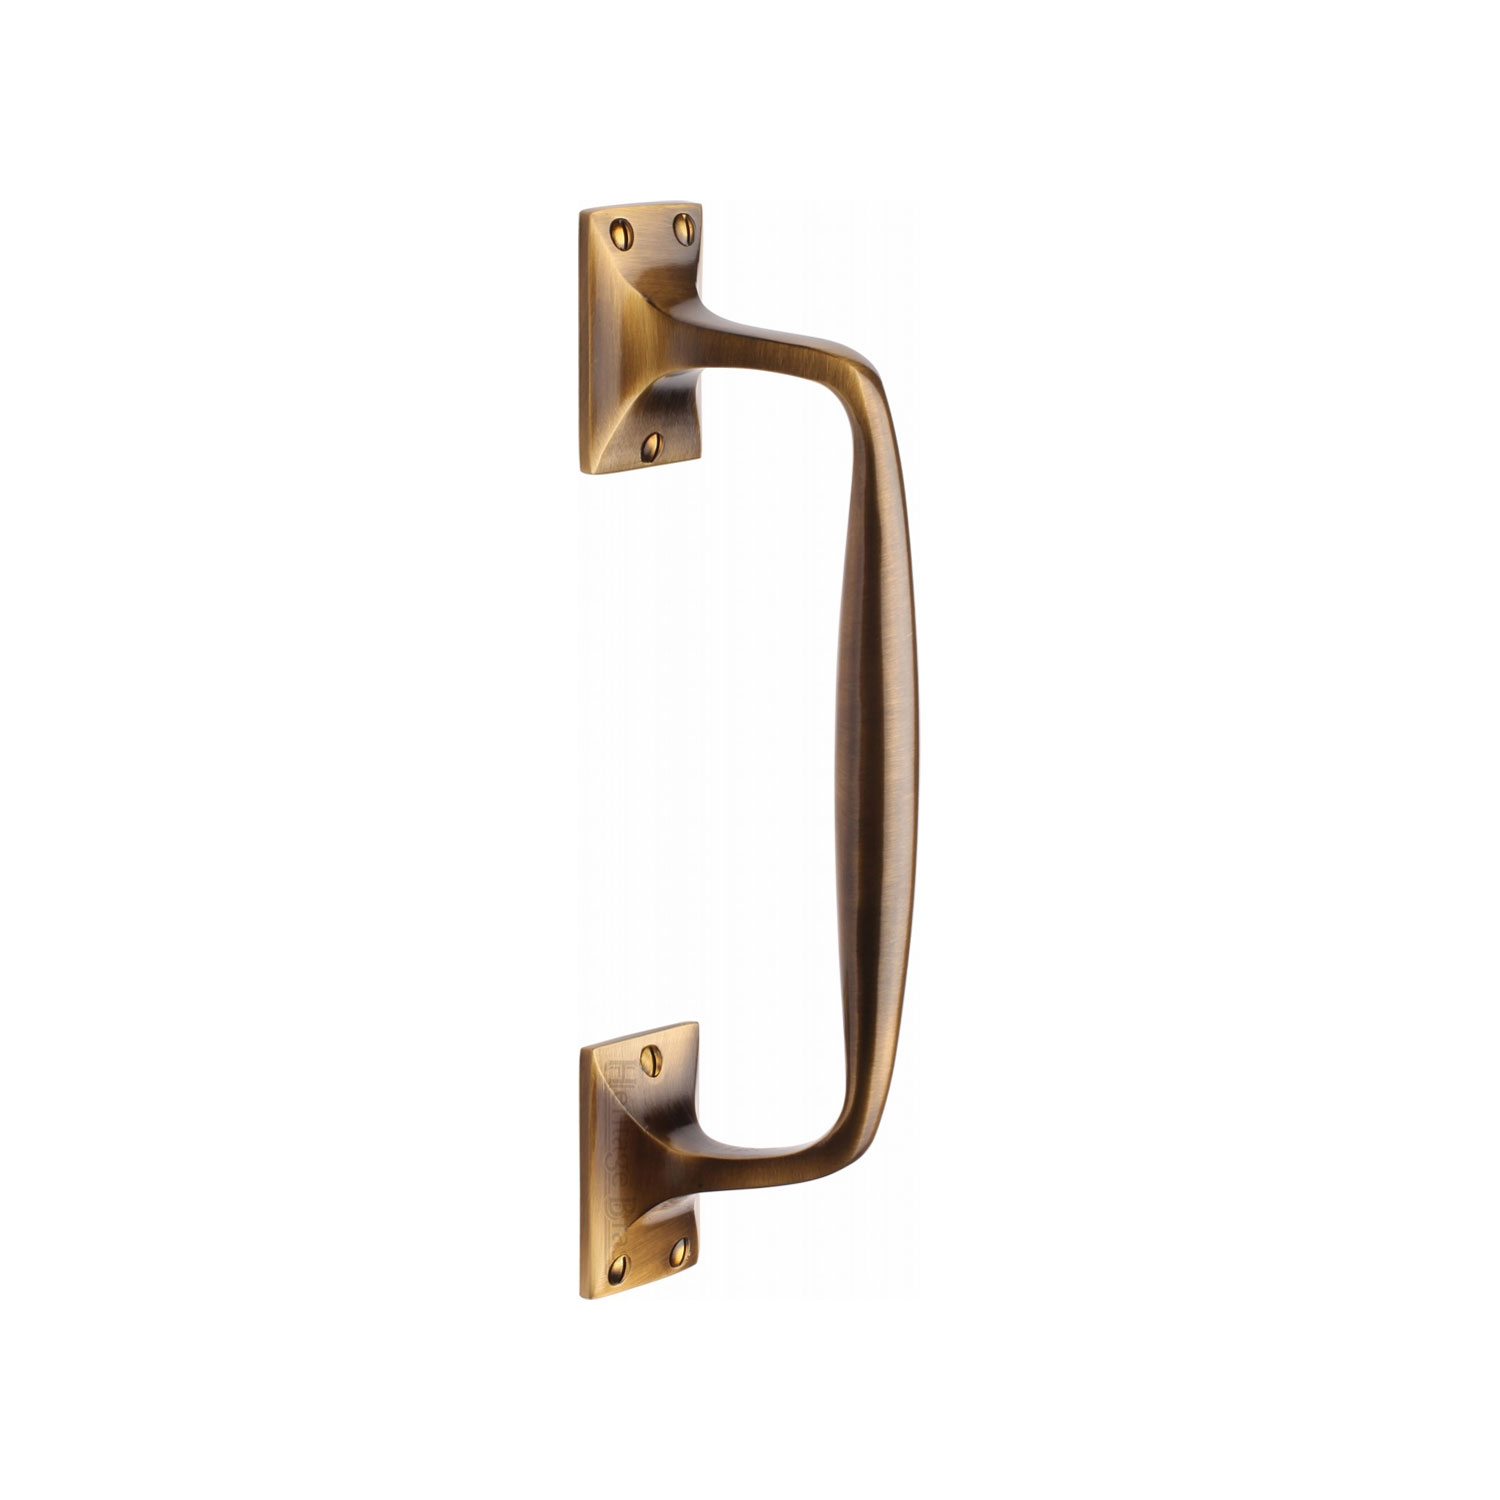 Heritage Brass Door Pull Handle Cranked Design 10"